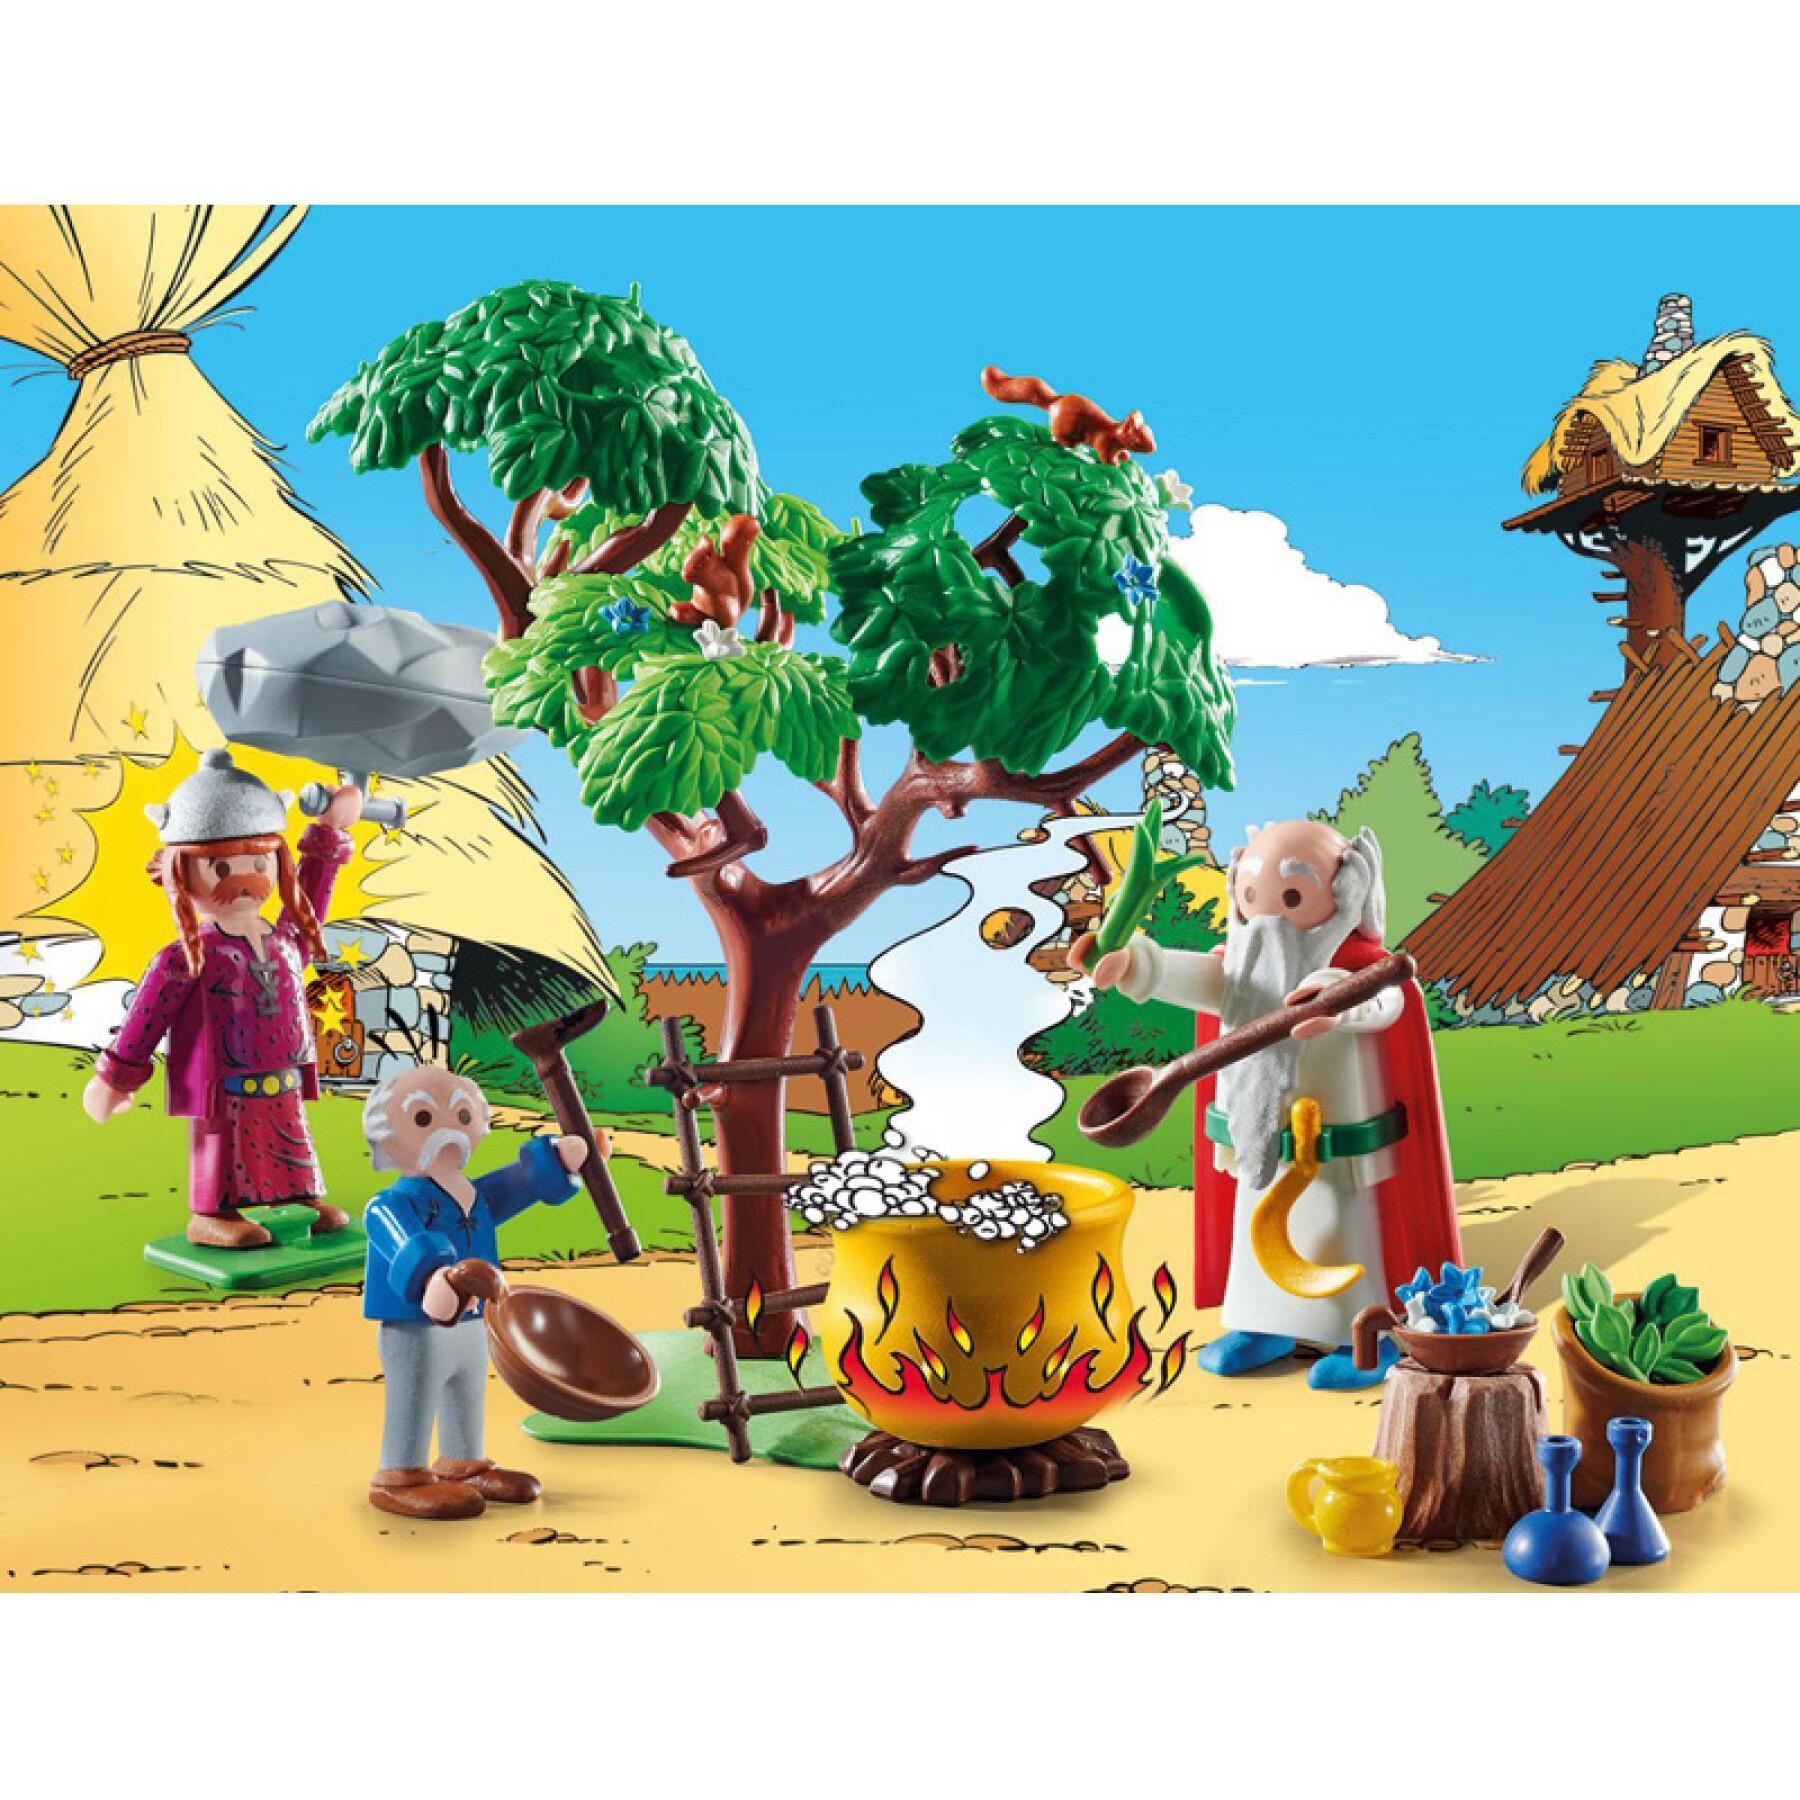 Imitation games asterix cauldron potion Playmobil Panoramix